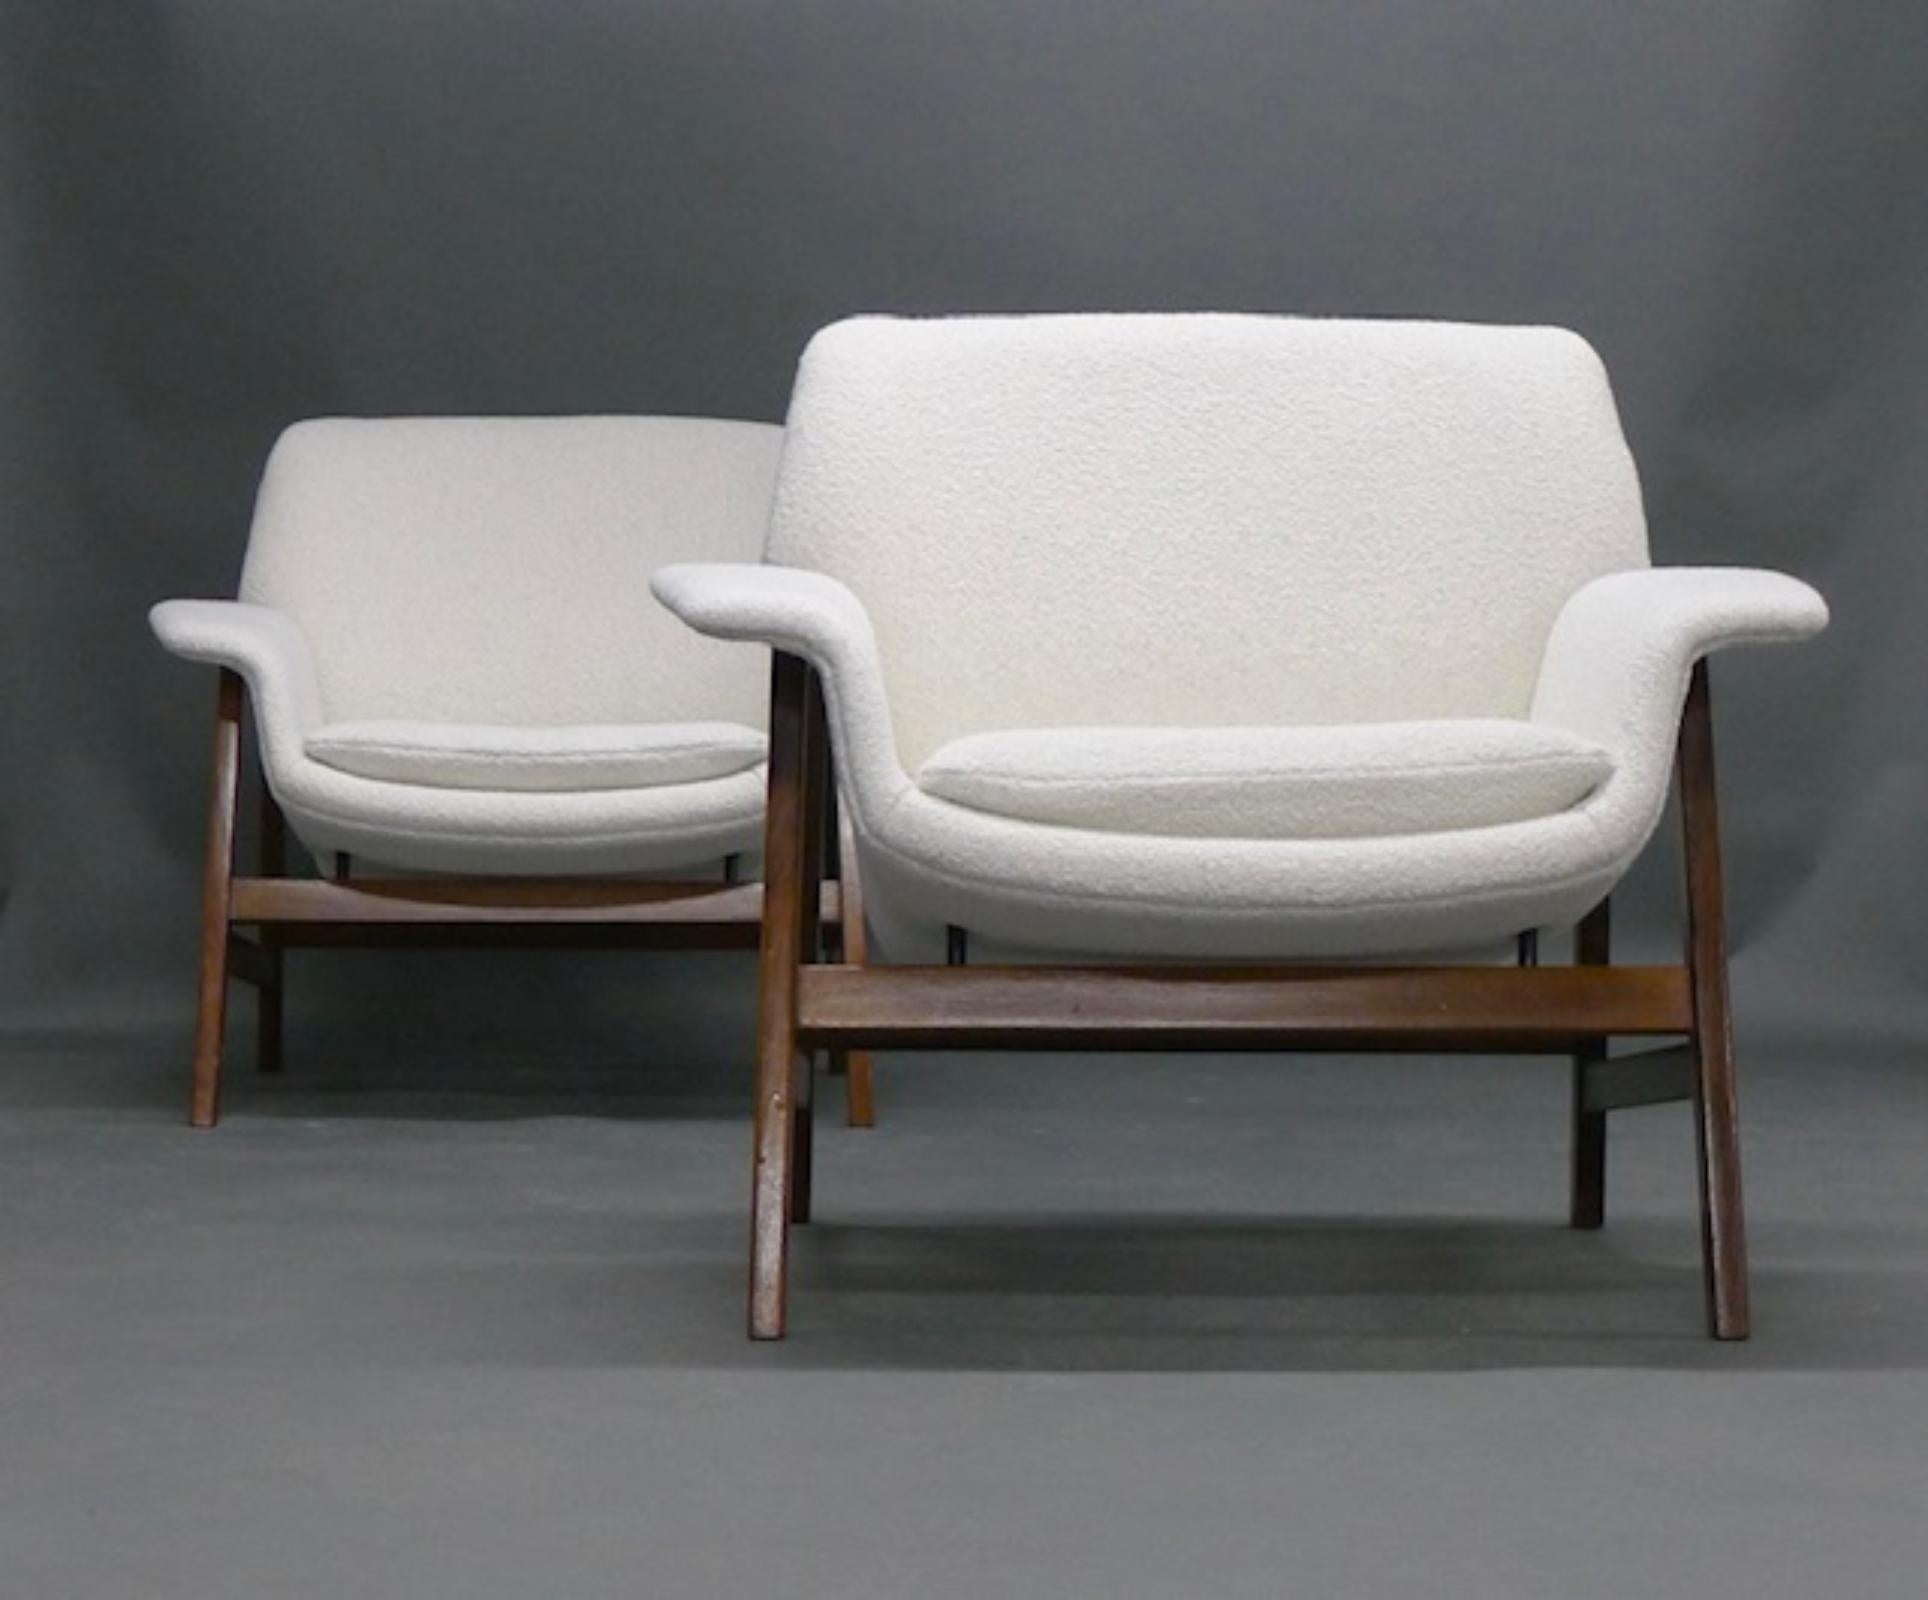 Superbe paire de chaises longues, conçues par Gianfranco Frattini et produites par Cassina, années 1950.

Modèle 849 en noyer, nouvellement recouvert d'un tissu bouclé blanc.

74 cm de haut, 84 cm de large, 70 cm de profondeur, hauteur du siège 42